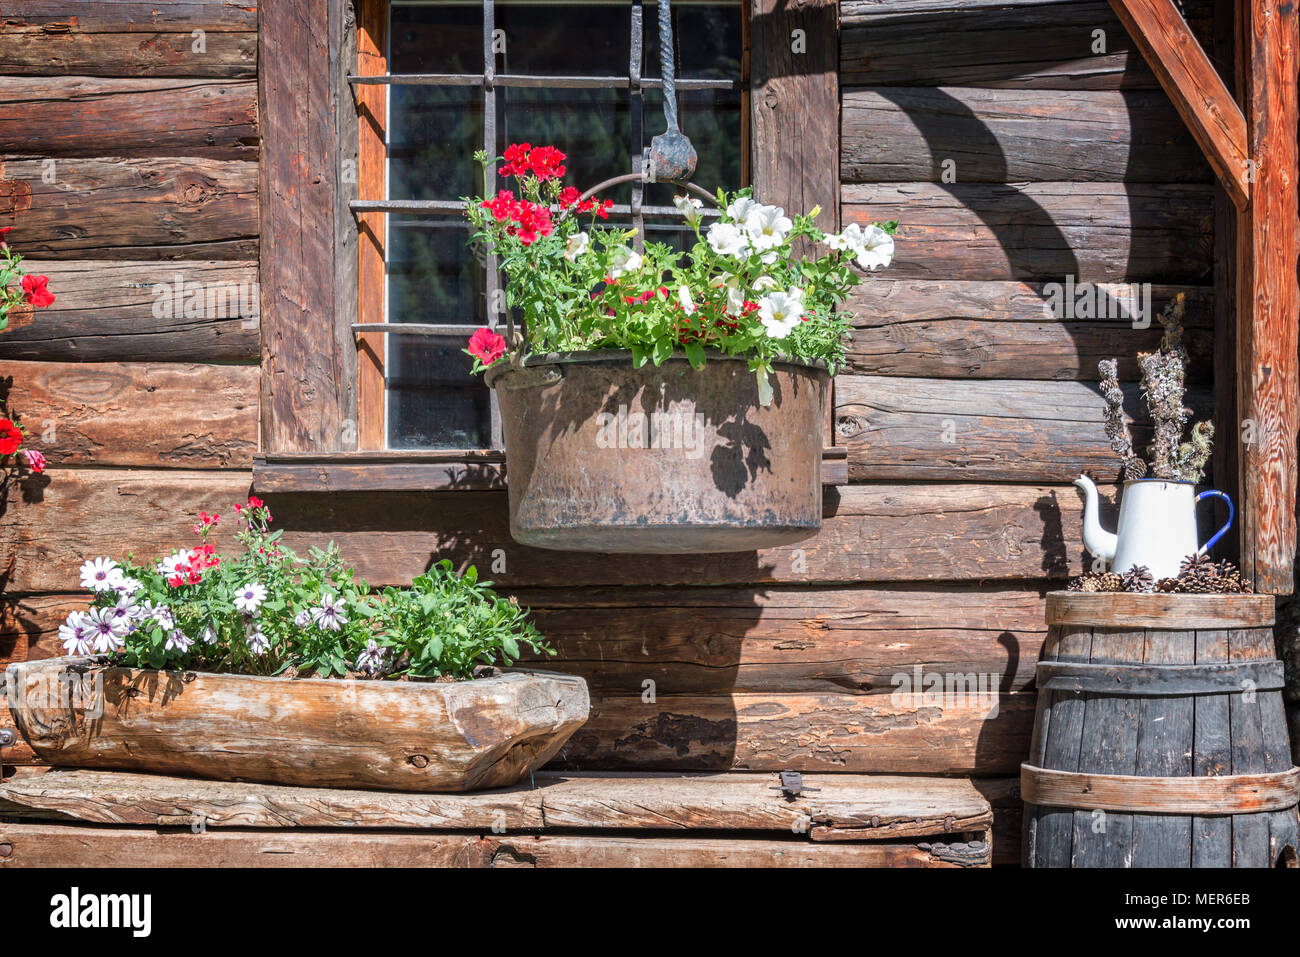 Petunia vasi di fiori sulla finestra di un rustico in legno log cabin nelle Alpi, Valle d'Aosta, Italia Foto Stock